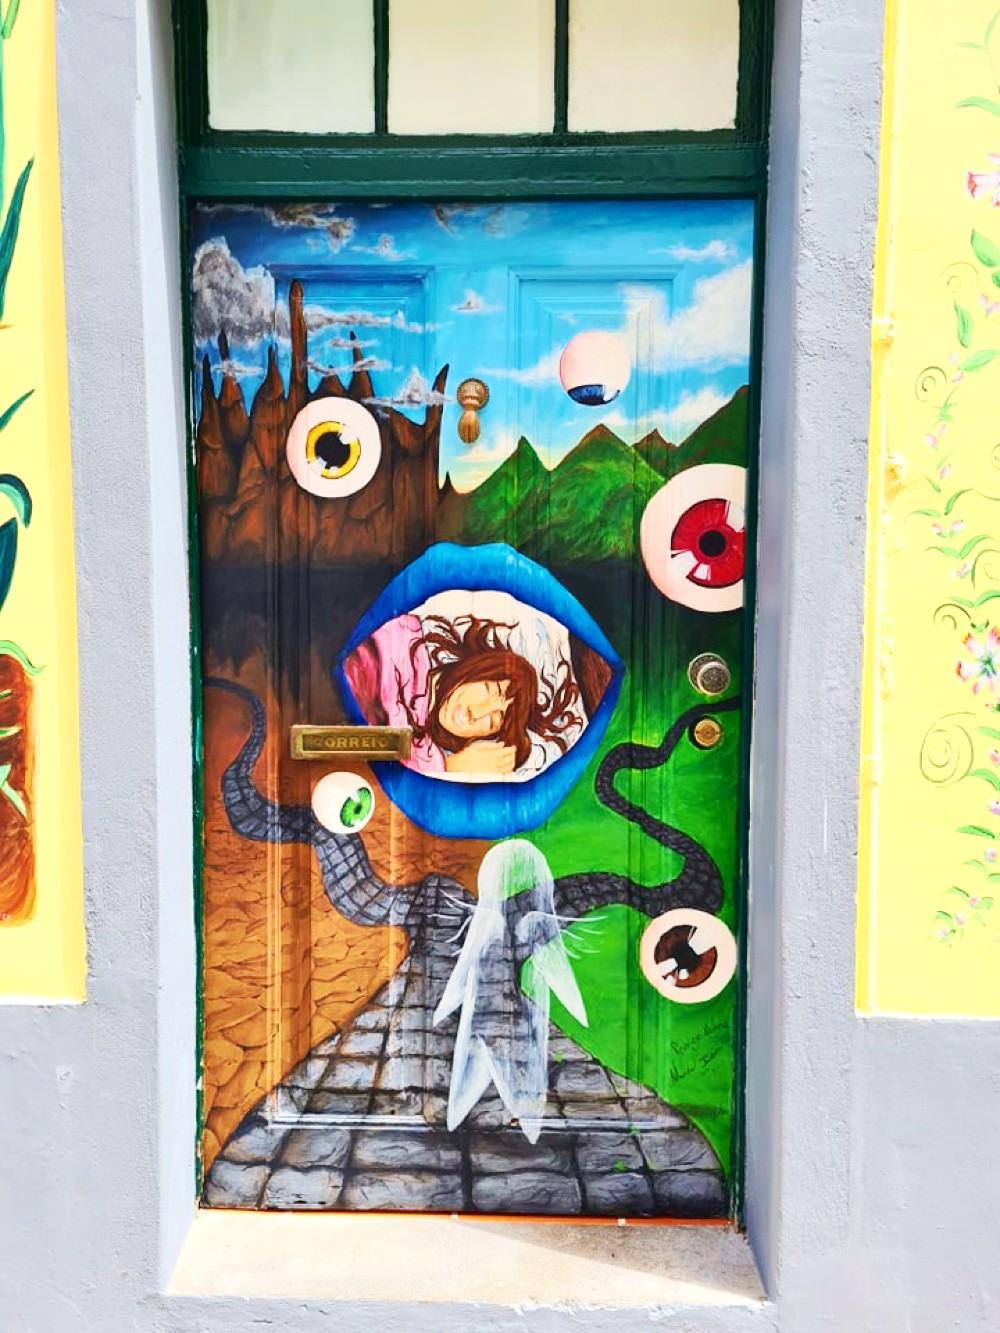 <img src="surreal.jpg" alt="surreal wall art in rua de santa maria"/> 